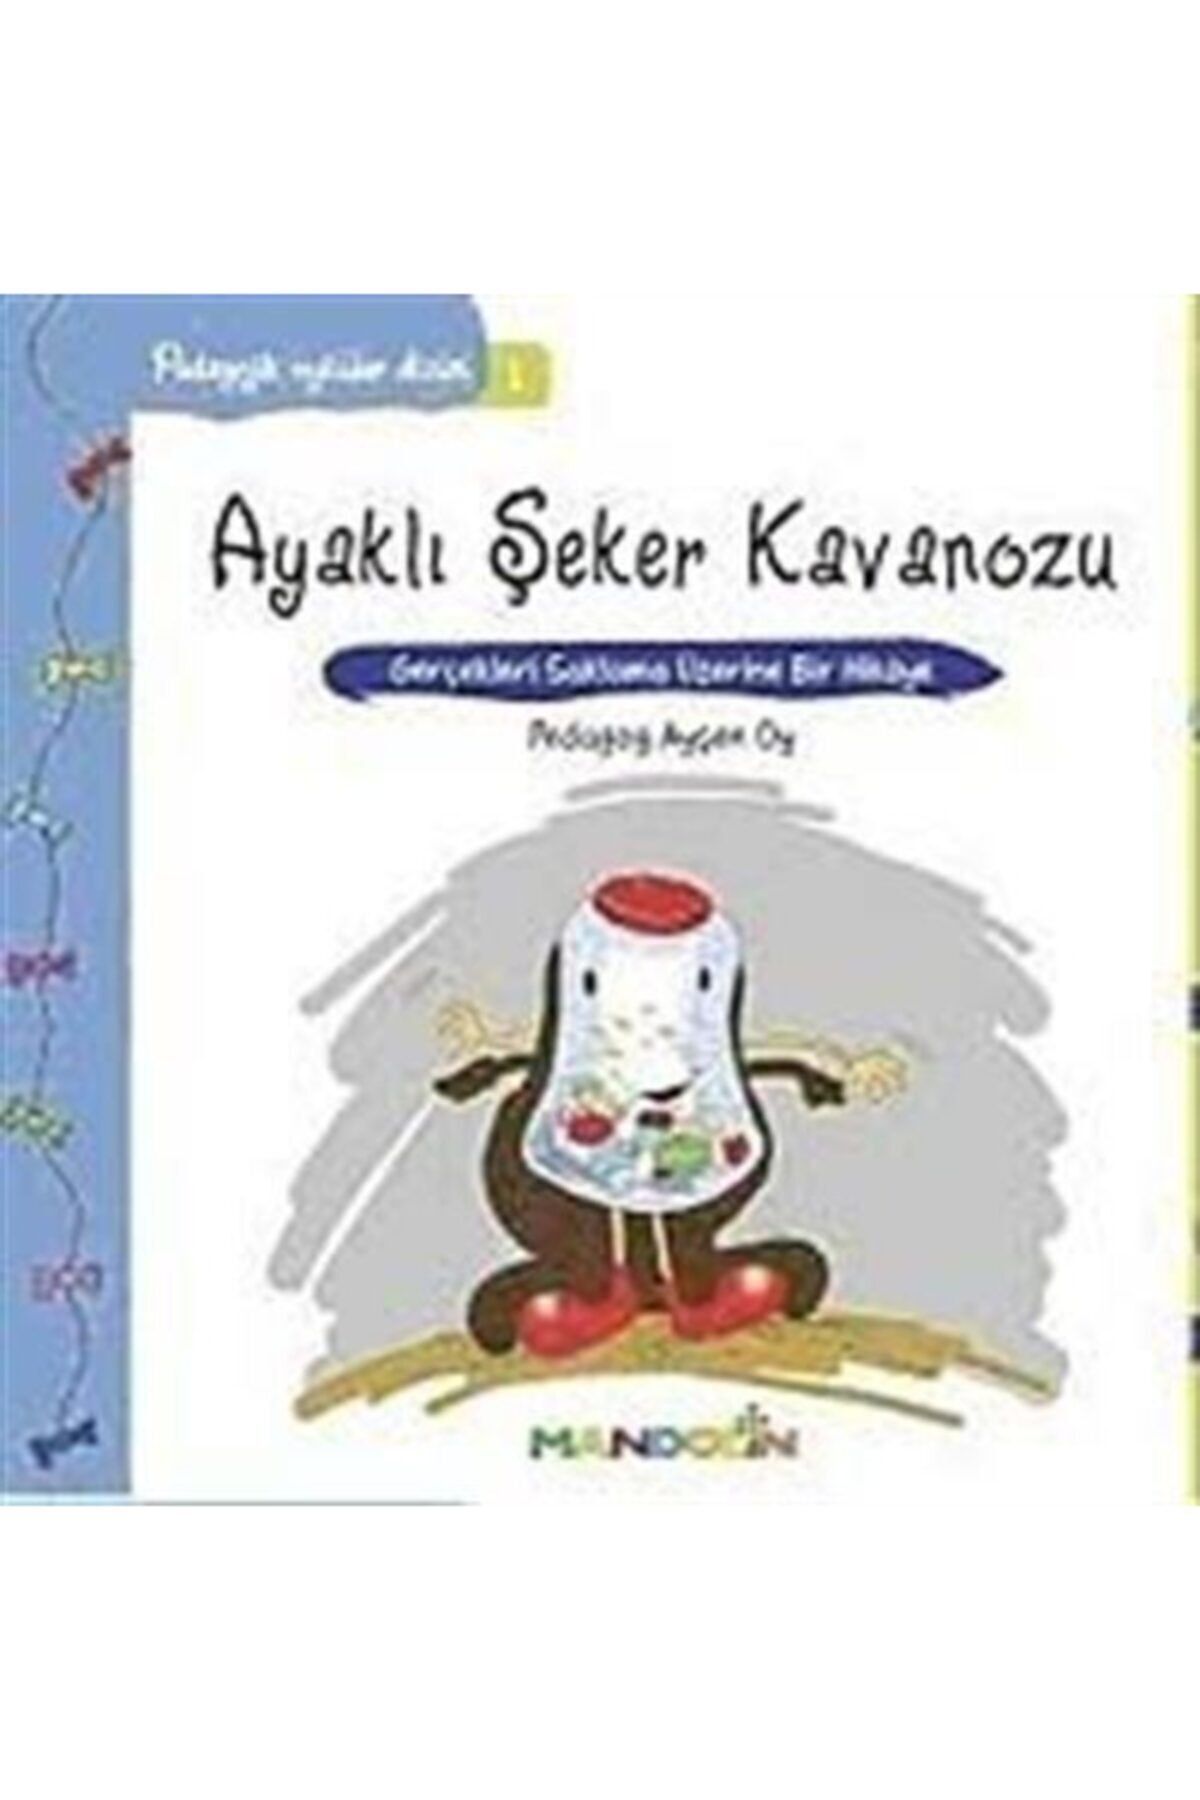 Mandolin Yayınları Pedagojik Öyküler: 1 - Ayaklı Şeker Kavanozu - Ayşen Oy 9789751030122